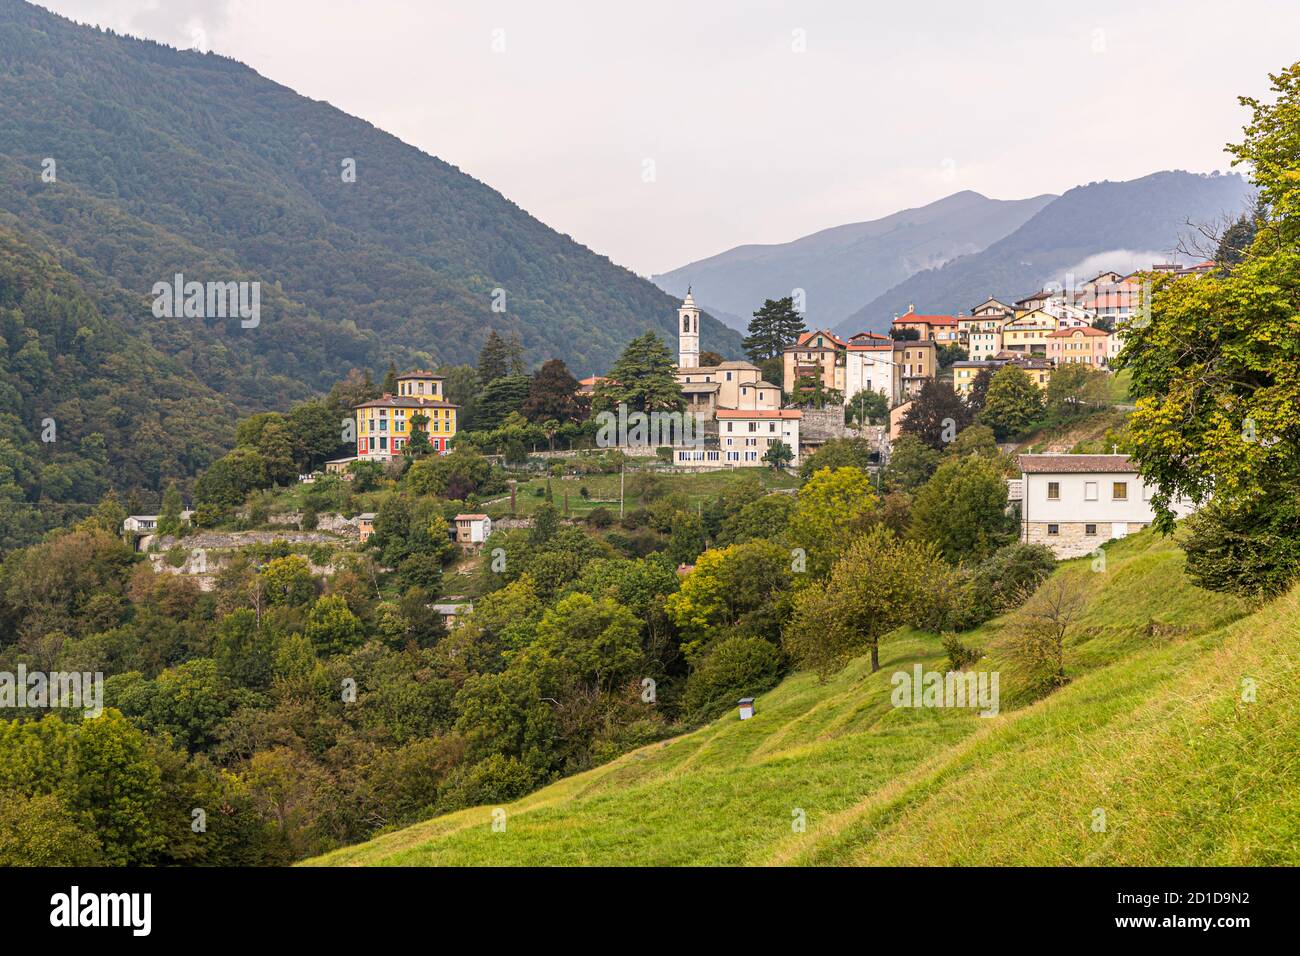 Impressions in the Ticino Muggio Valley, Breggia, Switzerland Stock Photo